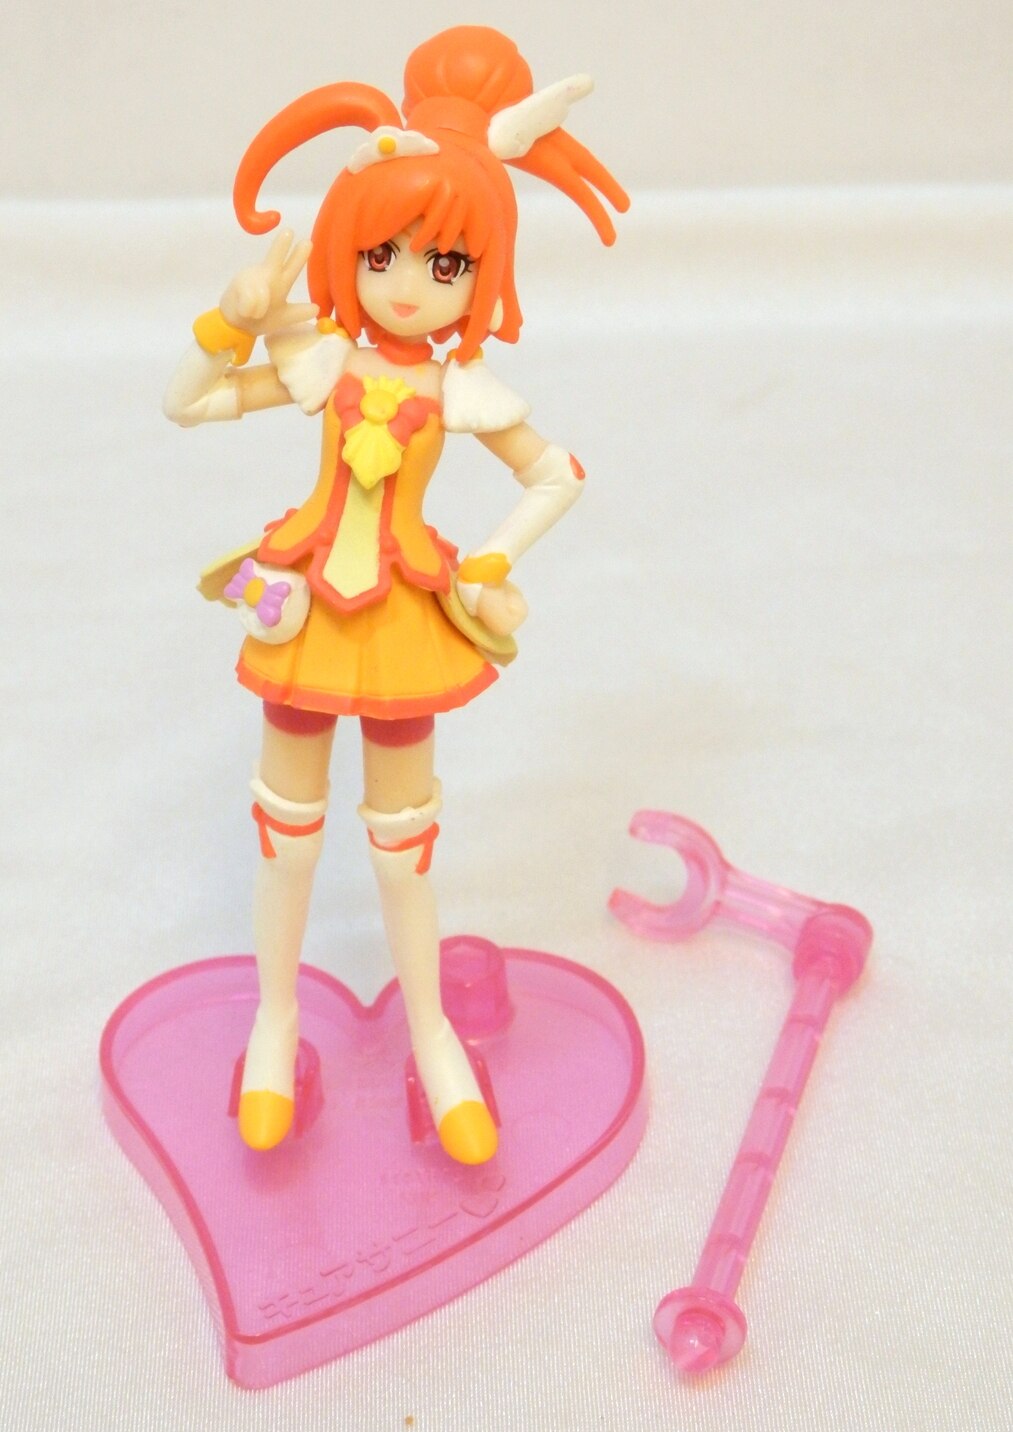 Bandai Smile Pretty Cure Glitter Force Cutie Figure 2 2 Cure Sunny Mandarake 在线商店 4221